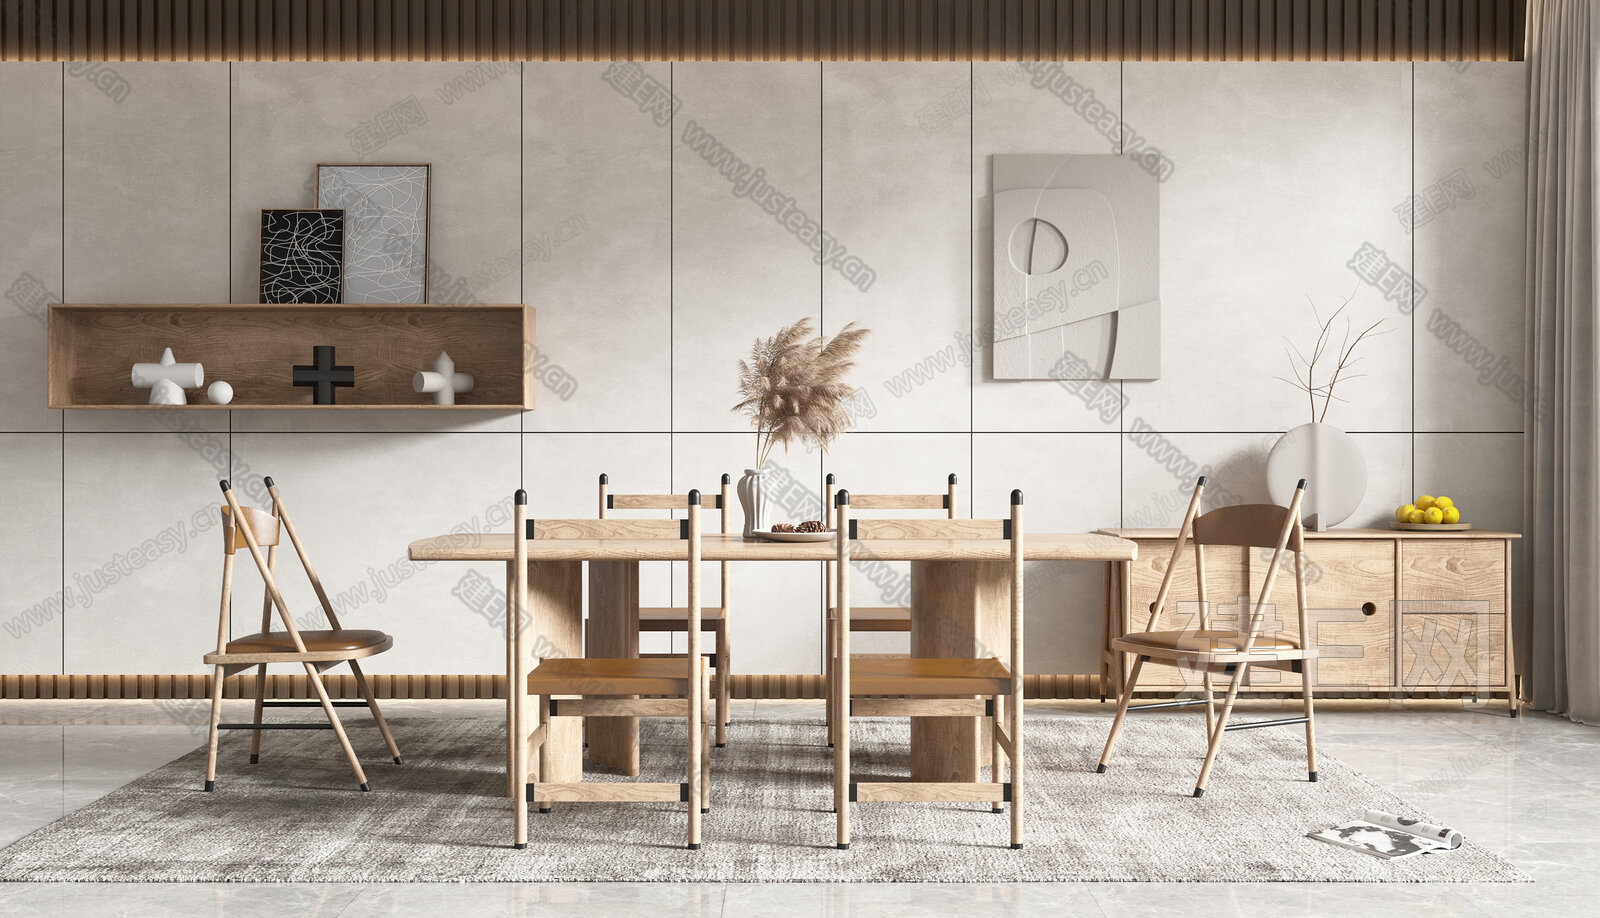 北欧餐桌椅组合3d模型